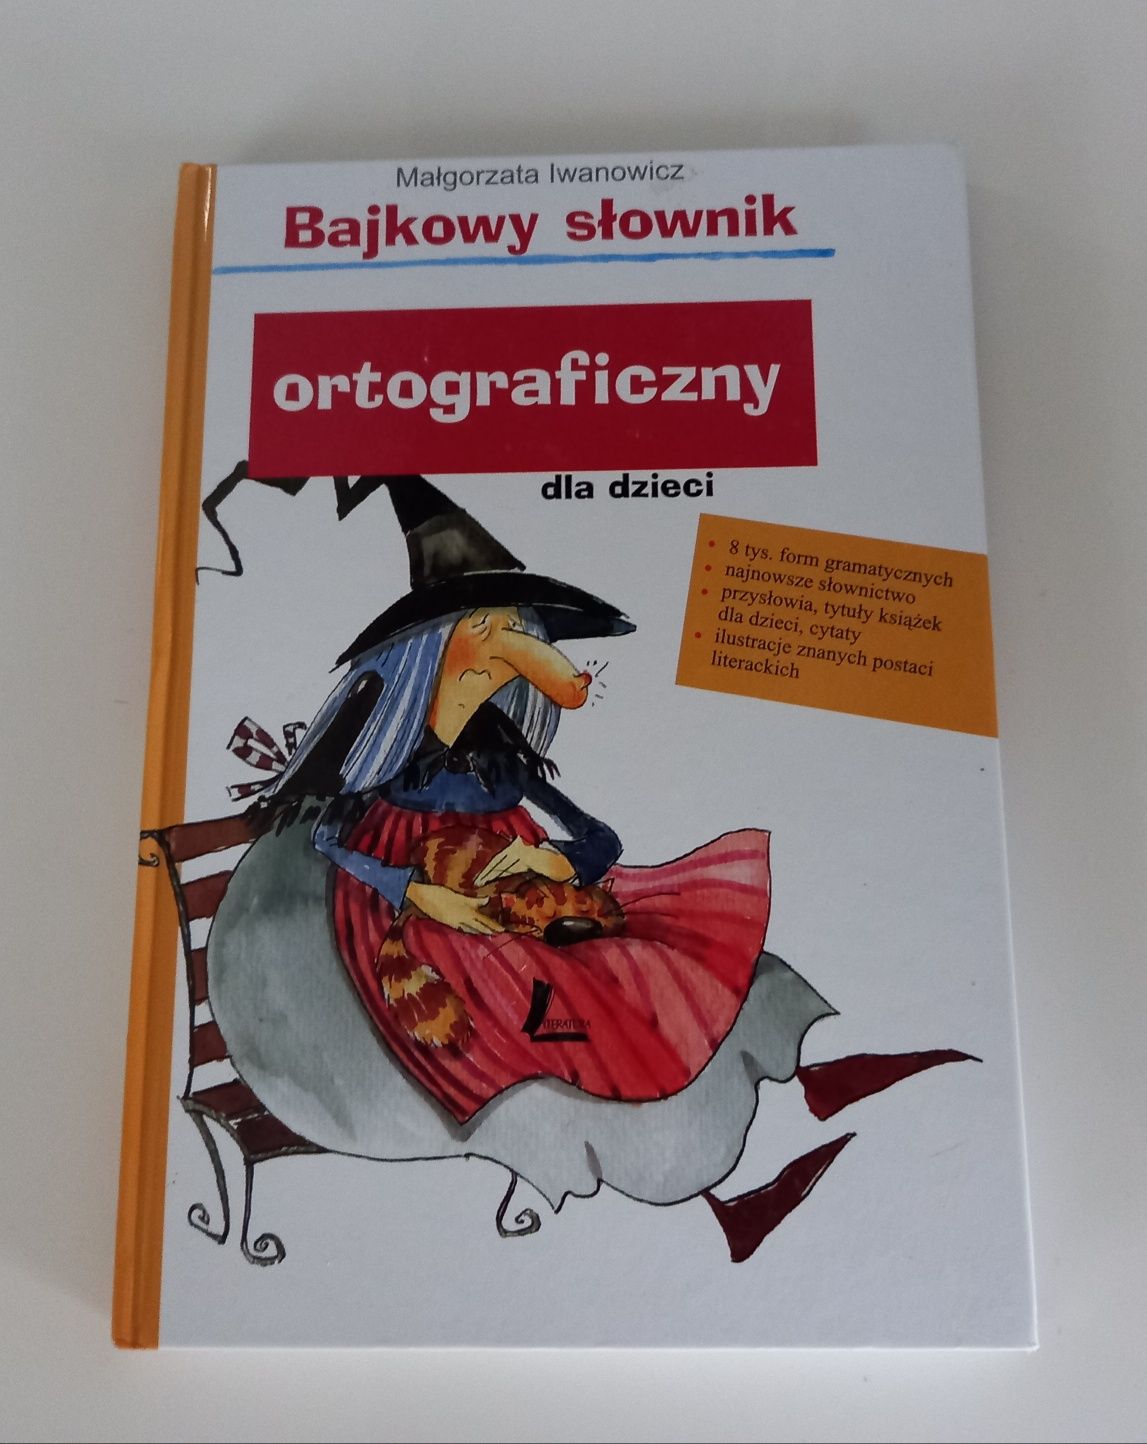 Książka "Bajkowy słownik ortograficzny"